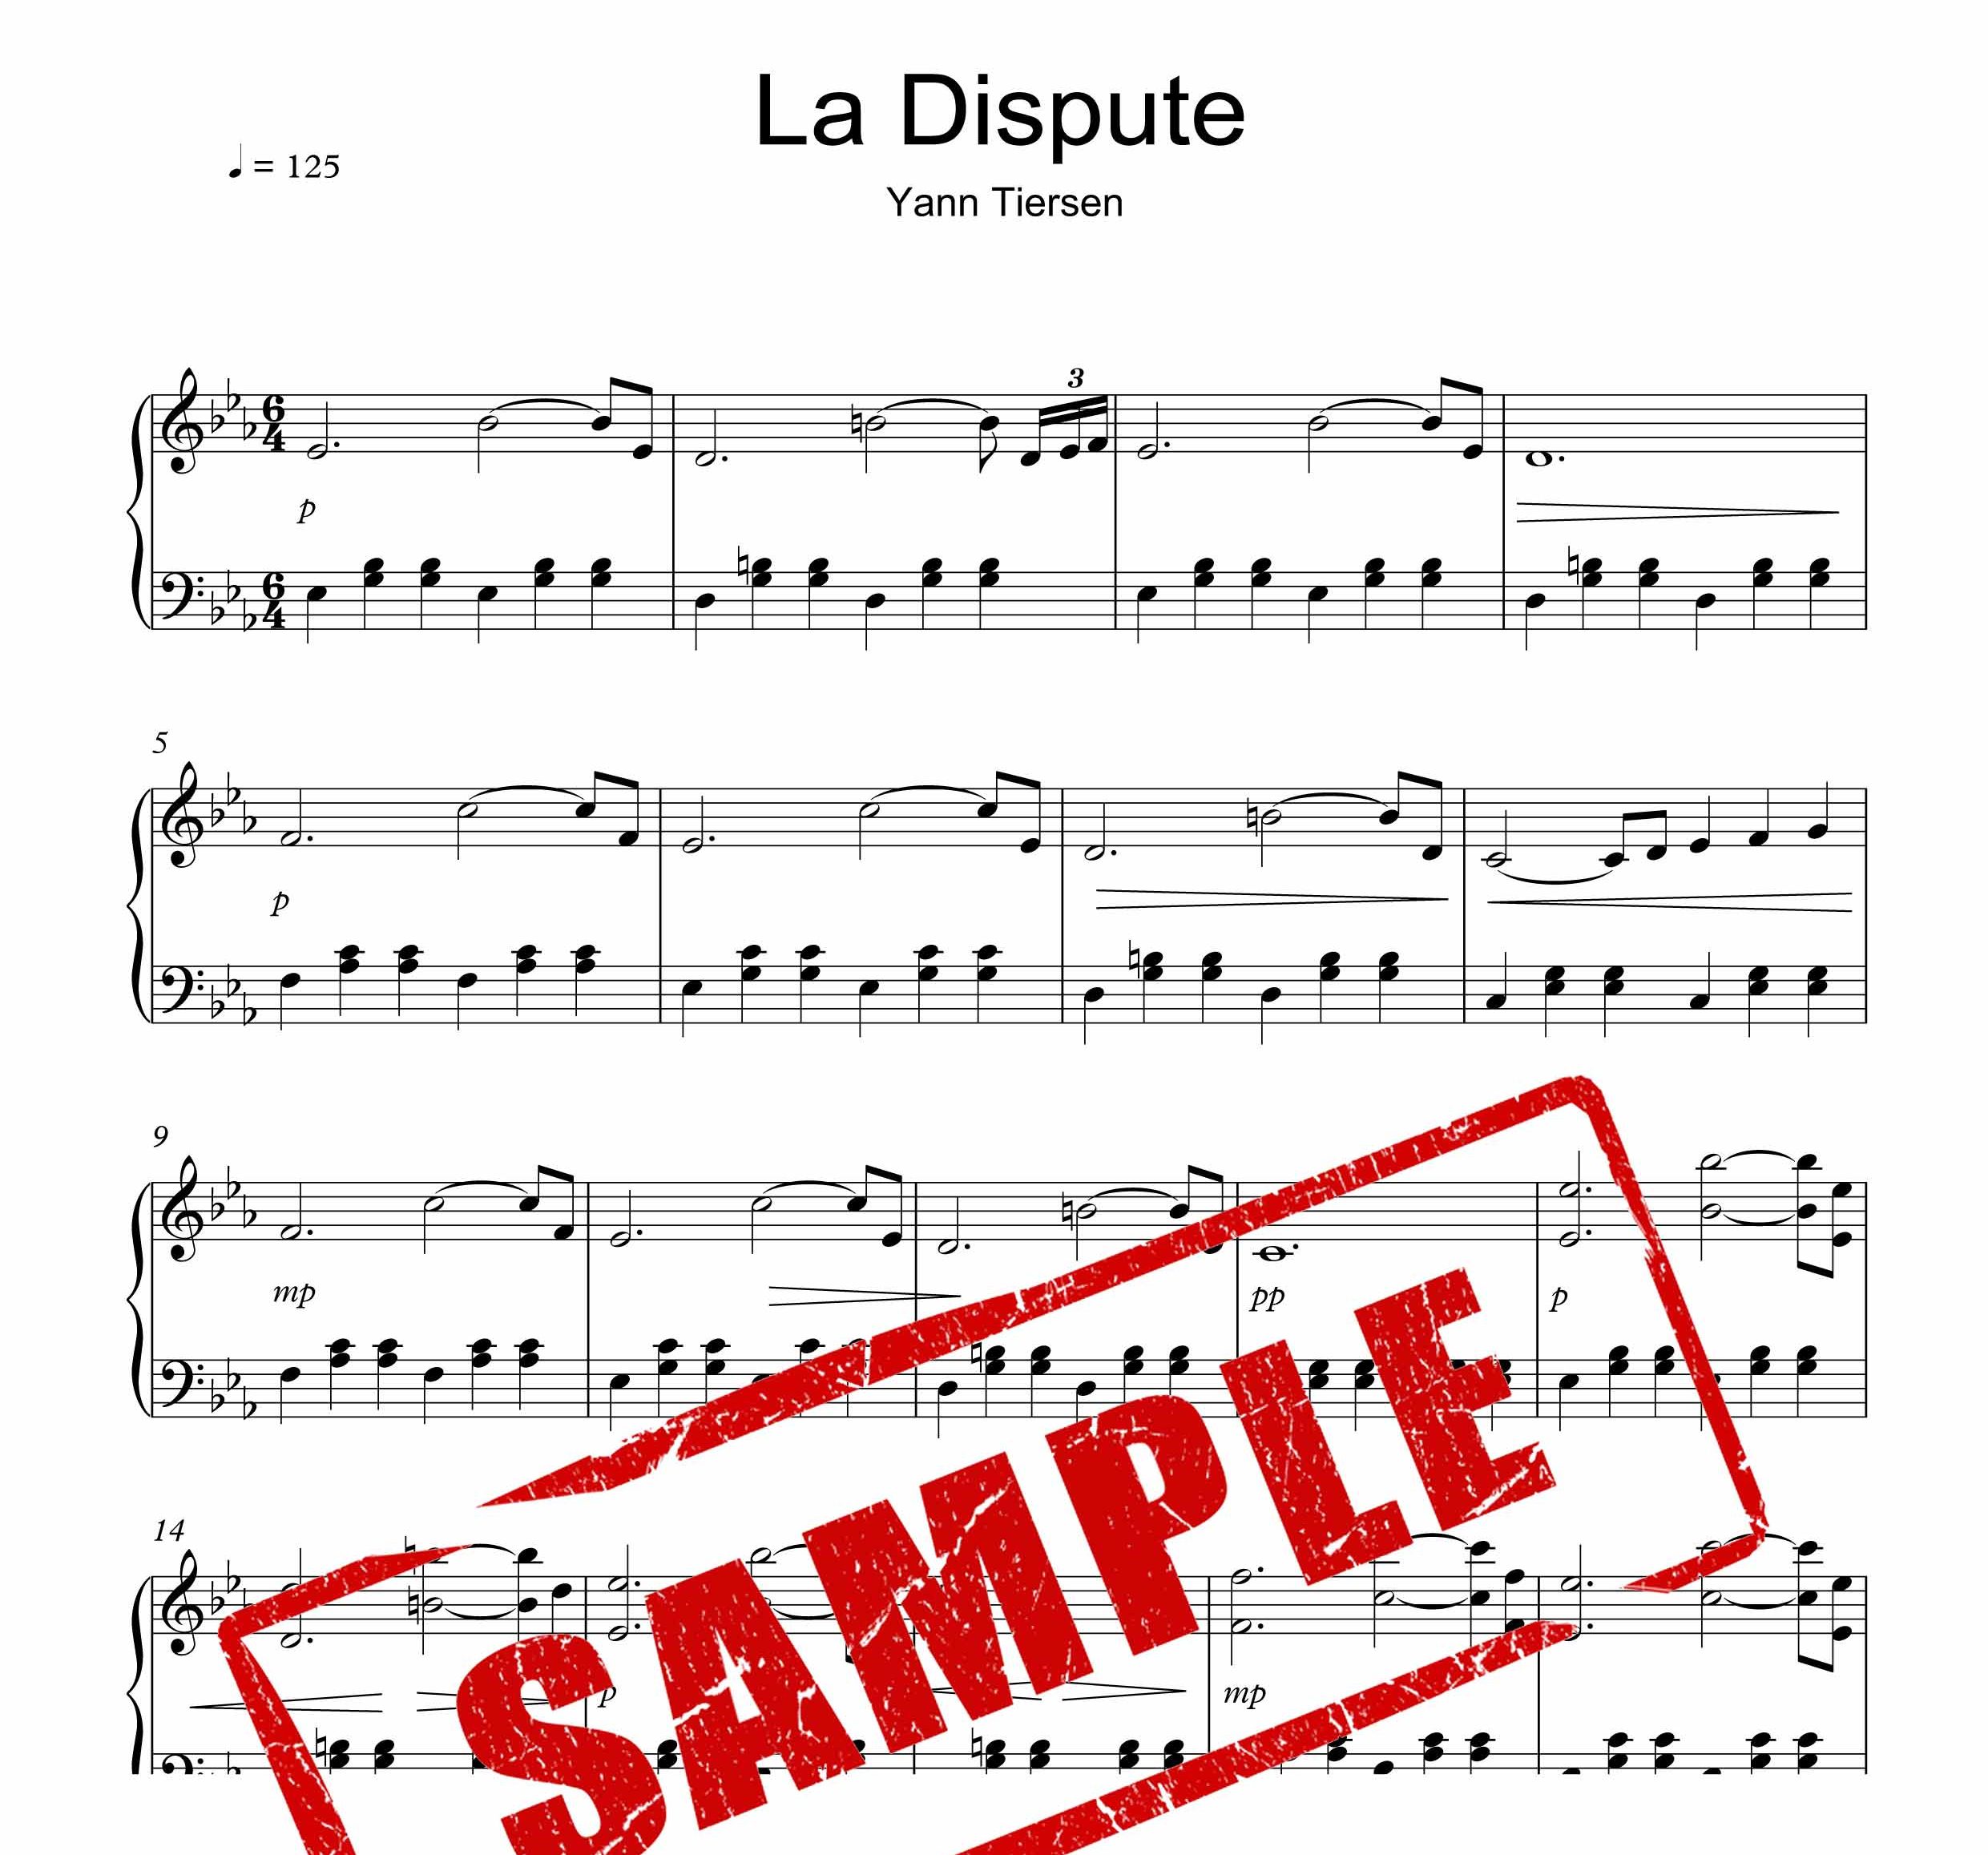 نت پیانوی قطعه La Dispute از یان تیرسن